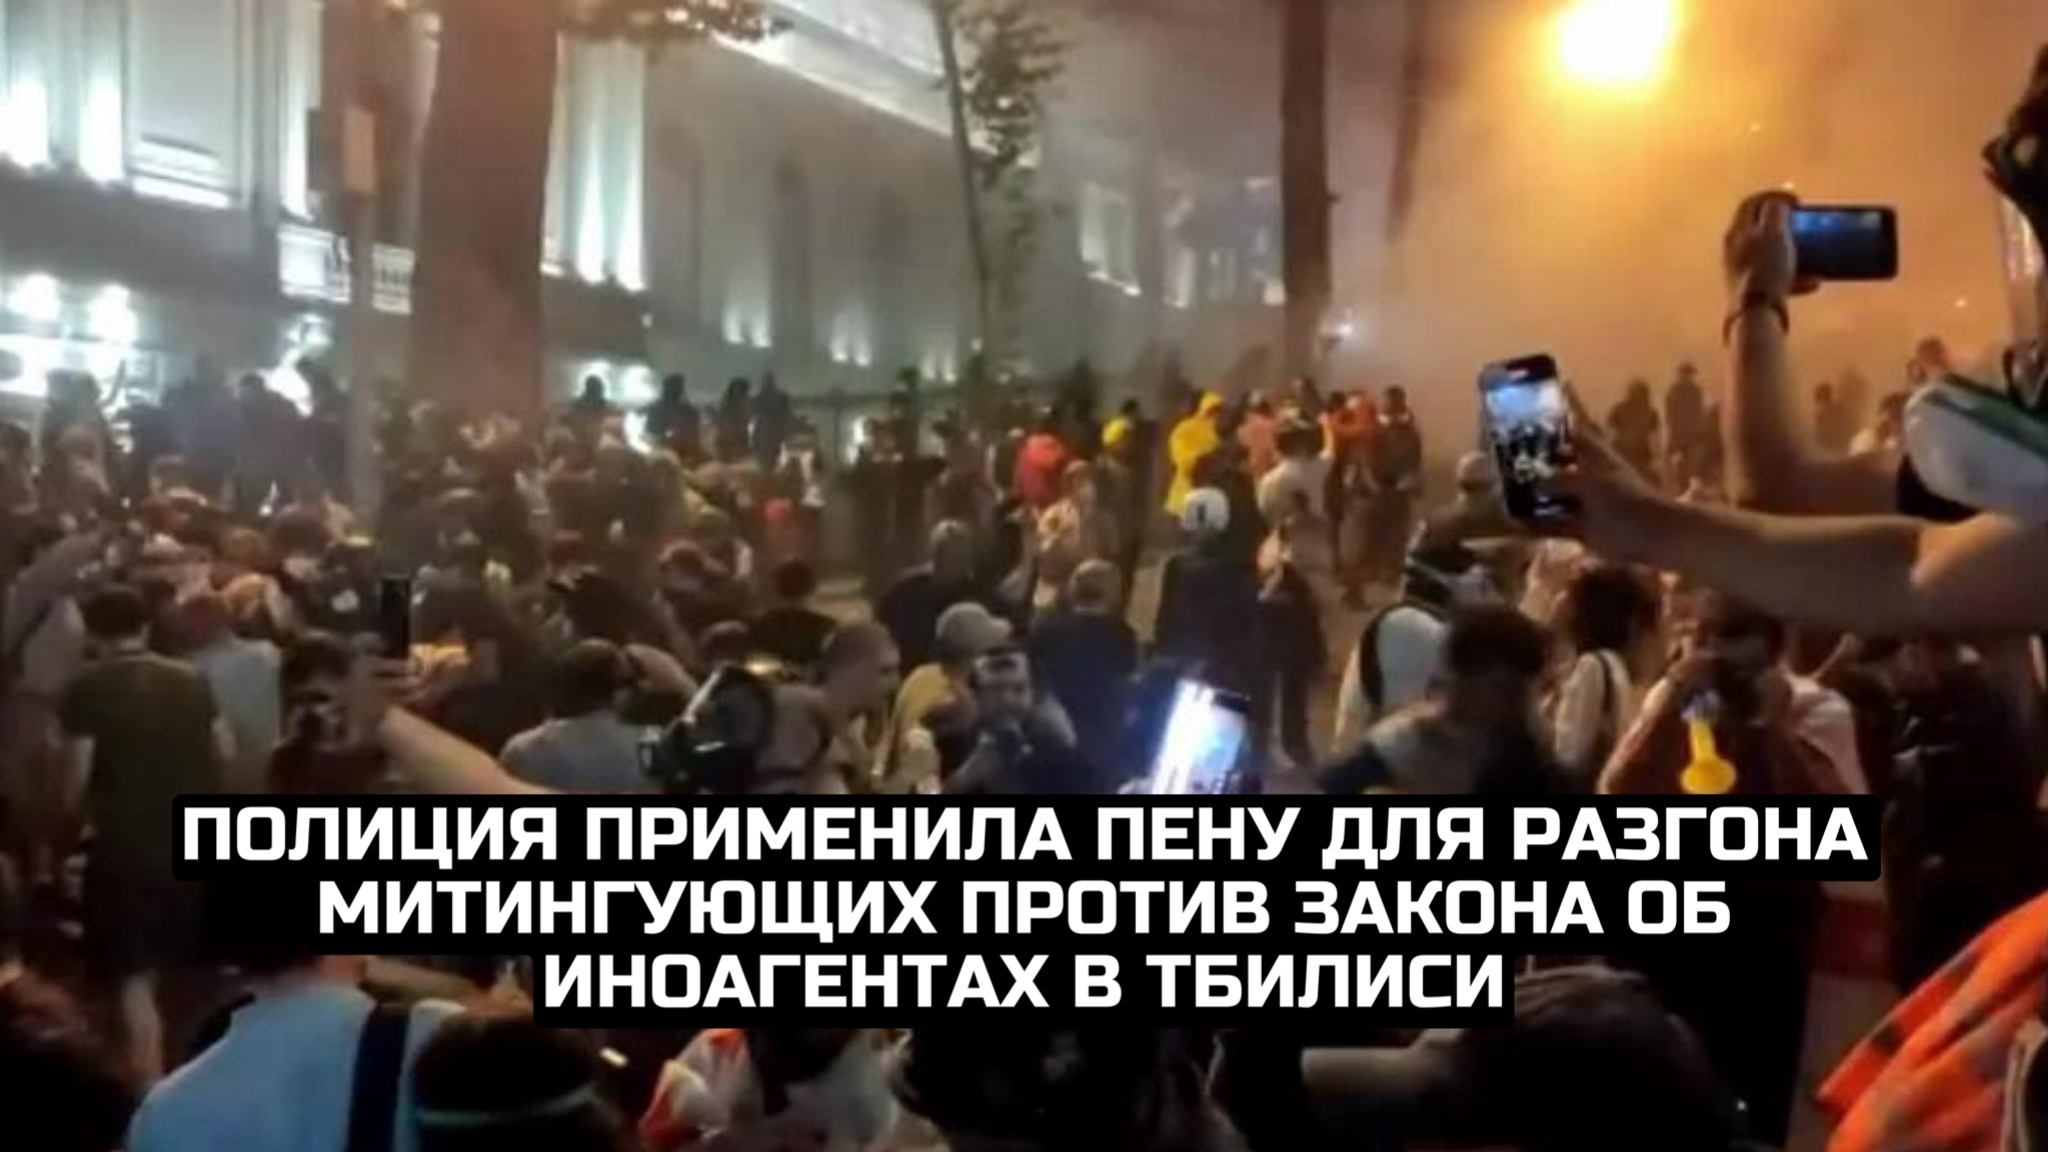 Полиция применила пену для разгона митингующих против закона об иноагентах в Тбилиси